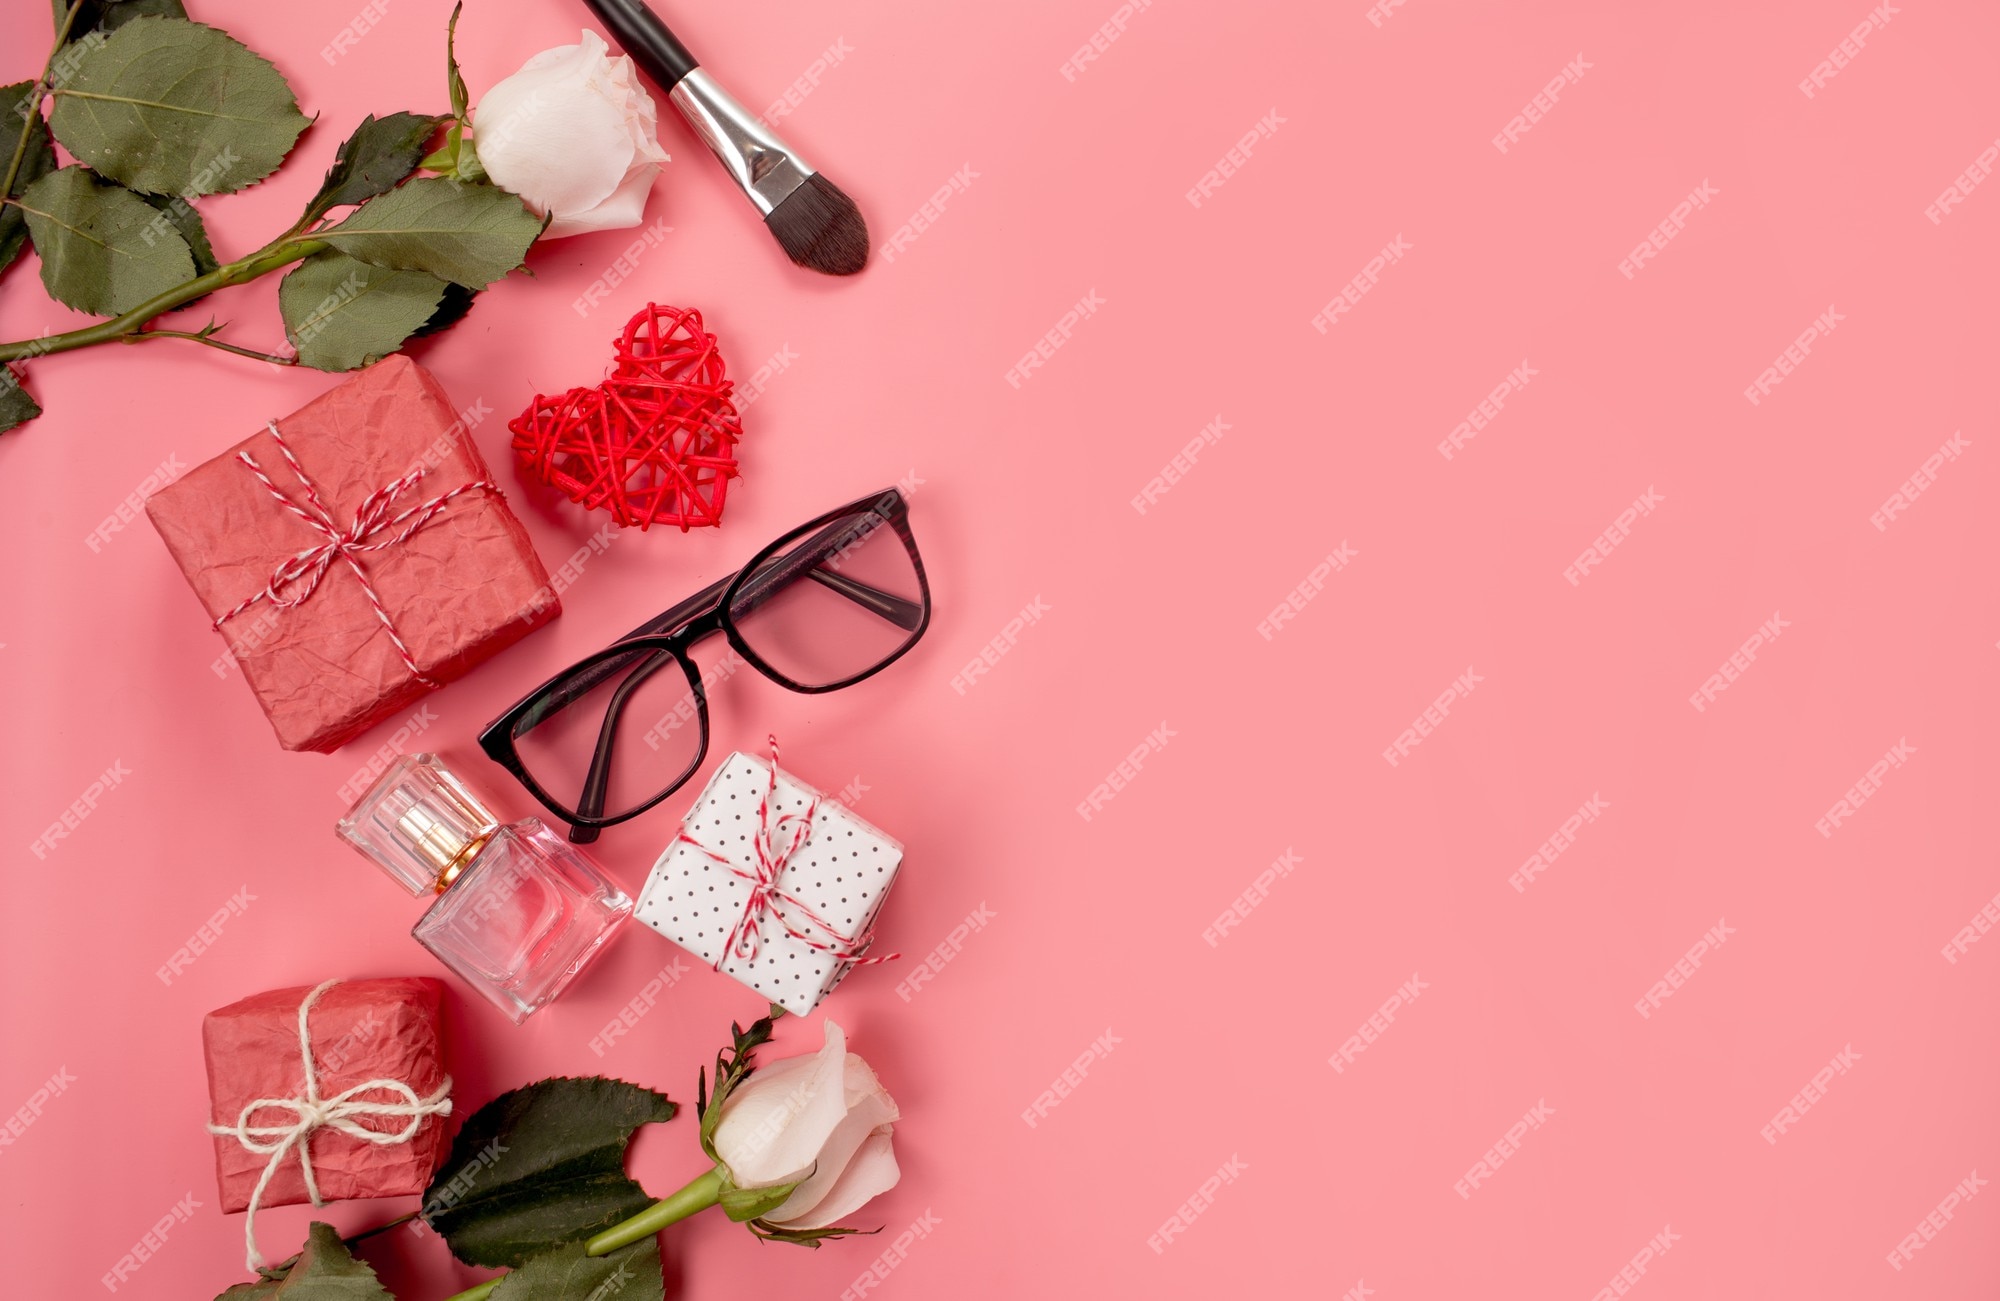 Por borroso Tormento Composición de moda con accesorios de mujer sobre fondo rosa | Foto Premium